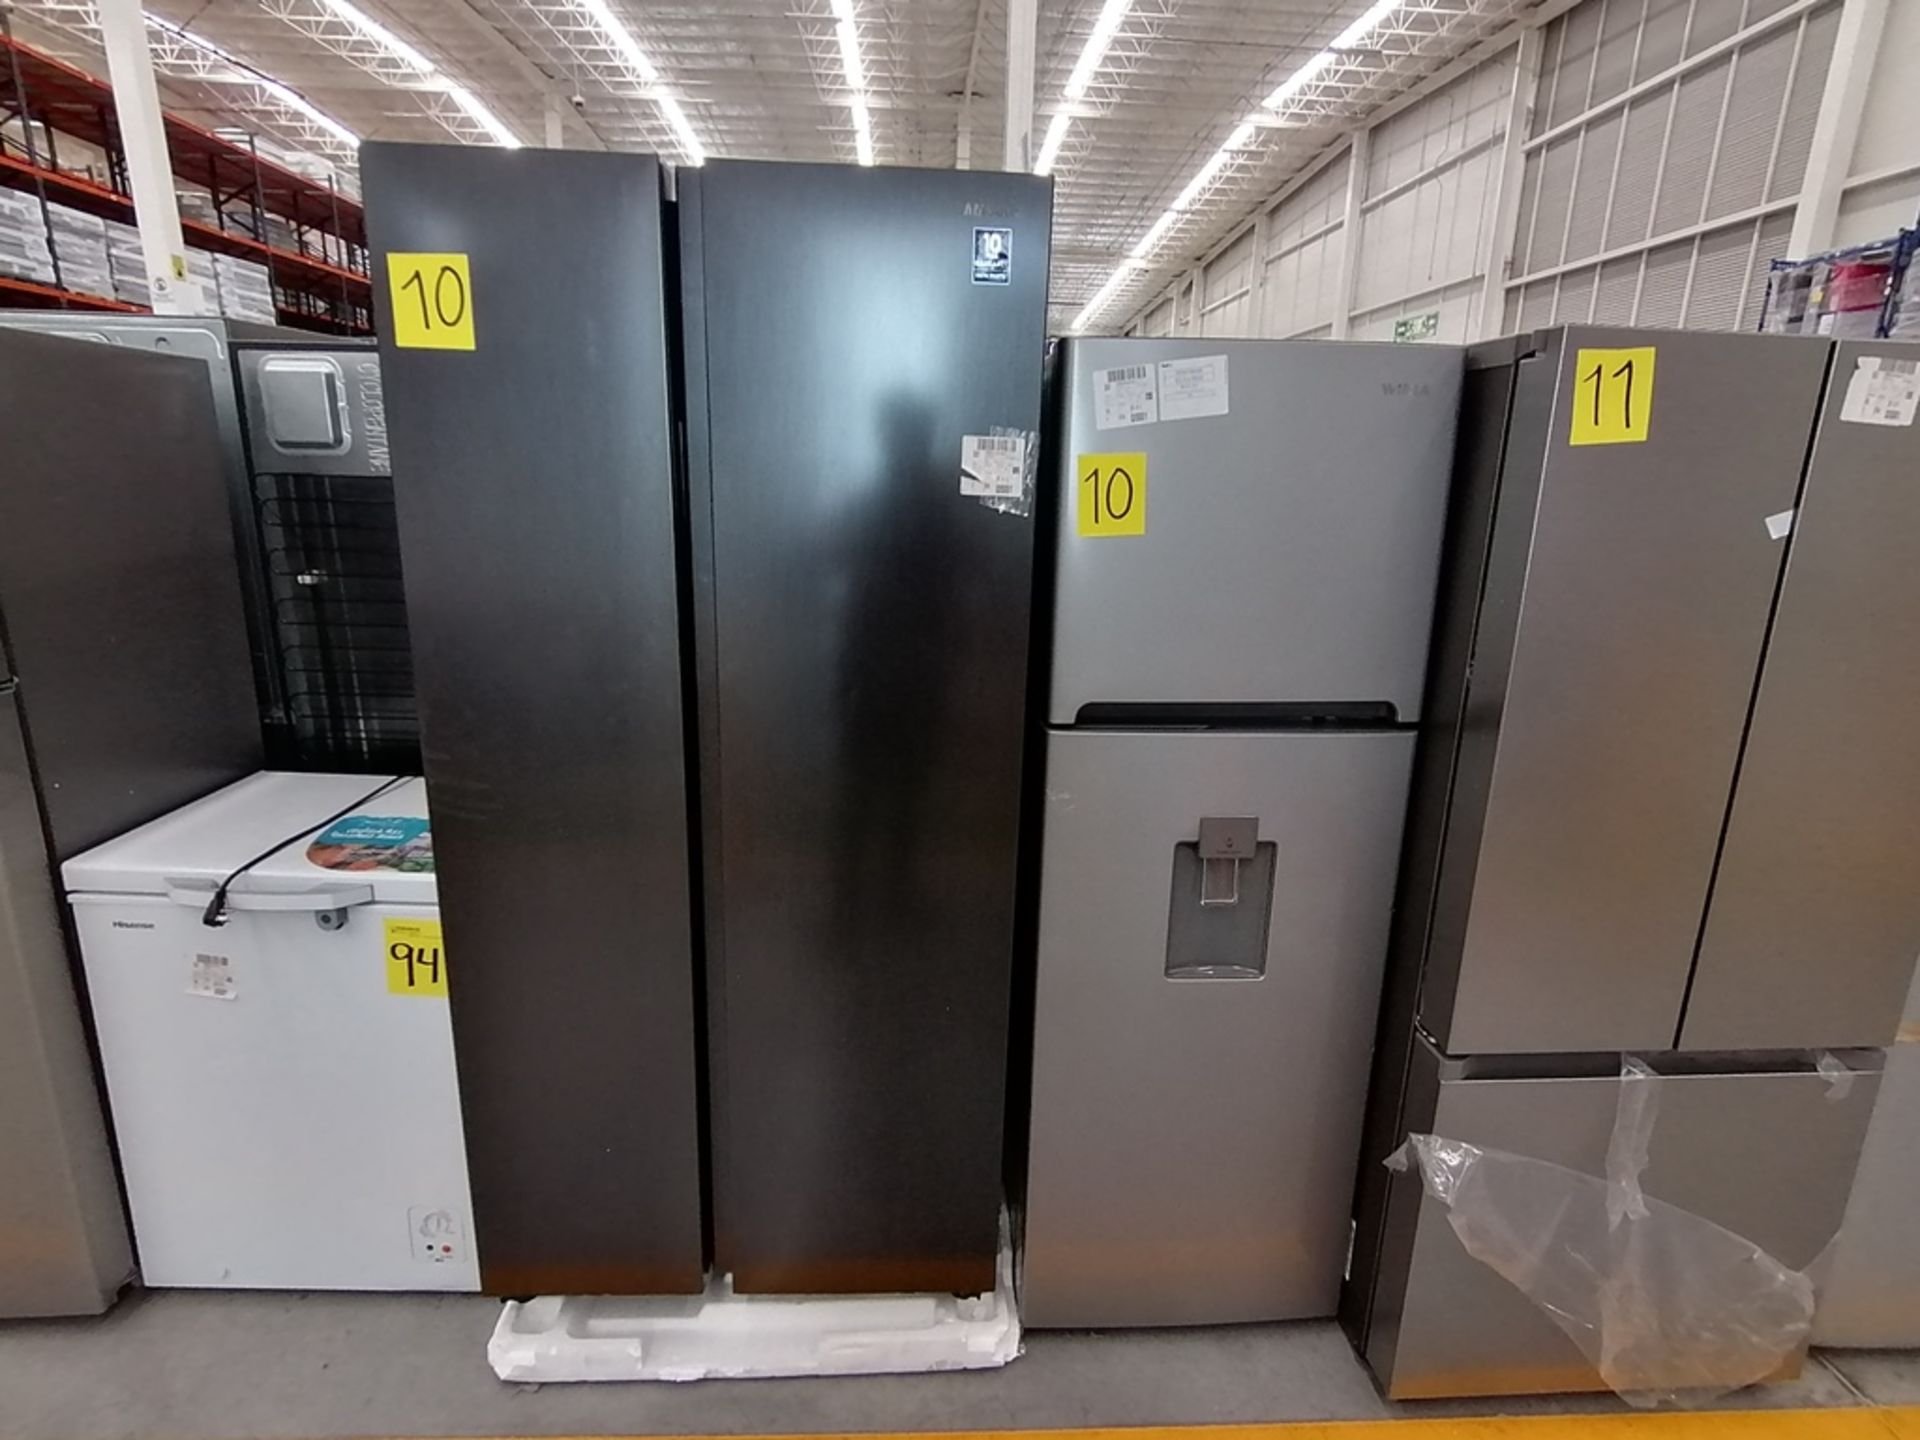 Lote de 2 refrigeradores incluye: 1 Refrigerador, Marca Samsung, Modelo RS28T5B00B1, Serie 0B2V4BAR - Image 3 of 13